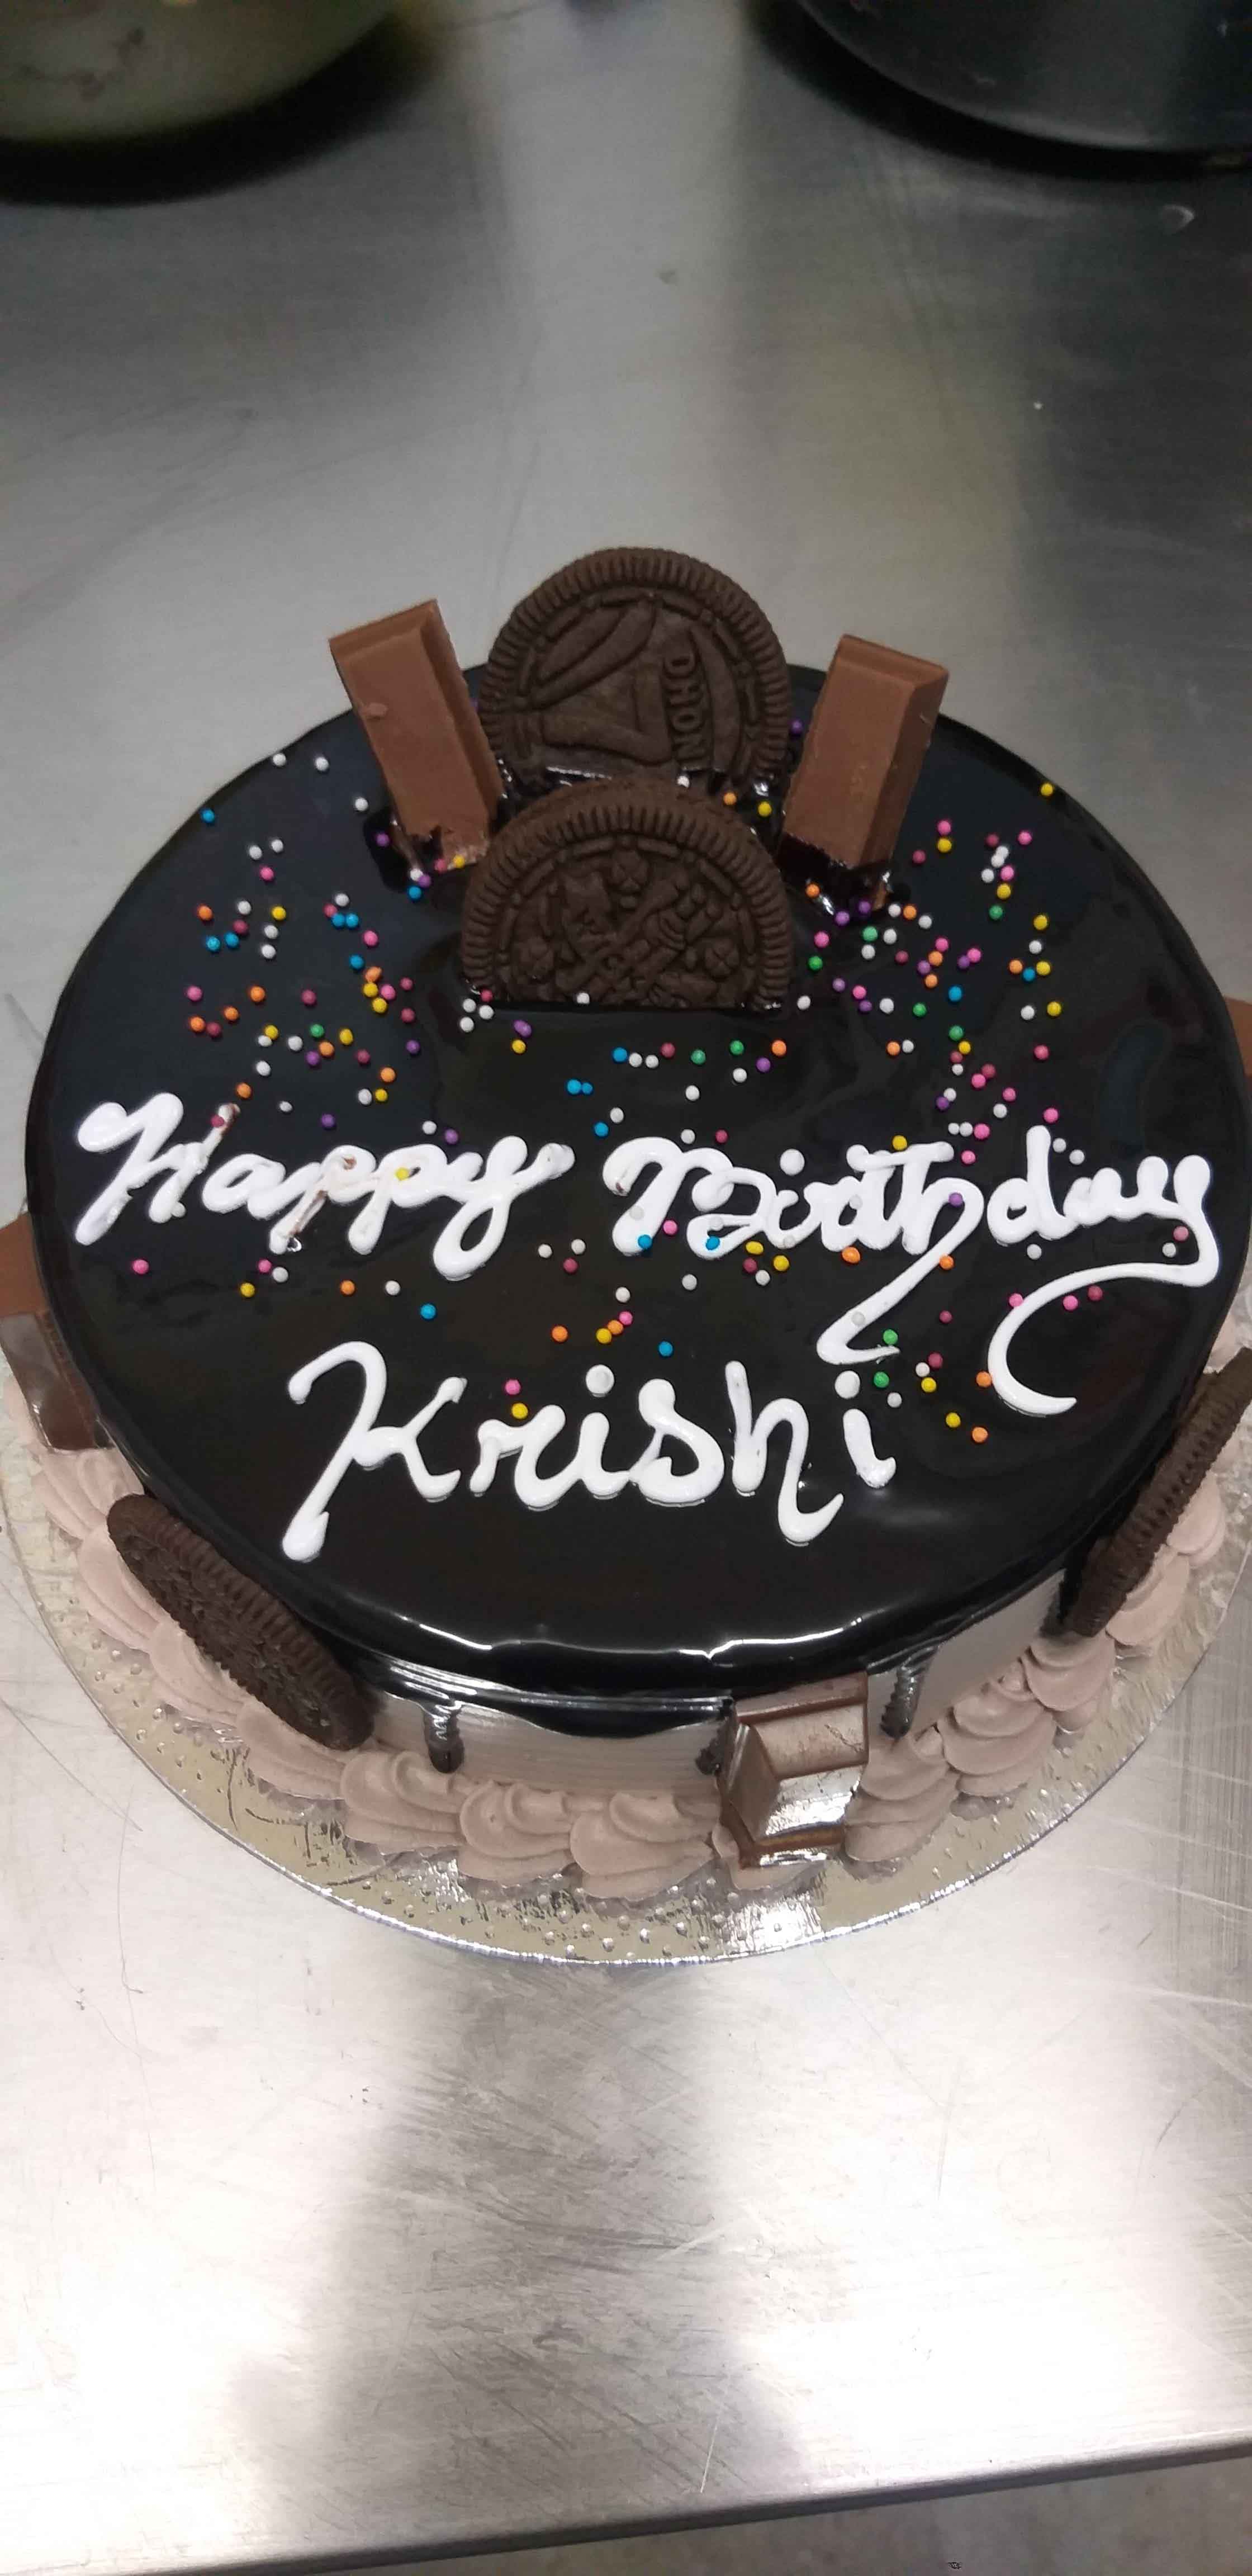 Krrish 3 Cake | Cupcake cakes, Cake, Gum paste